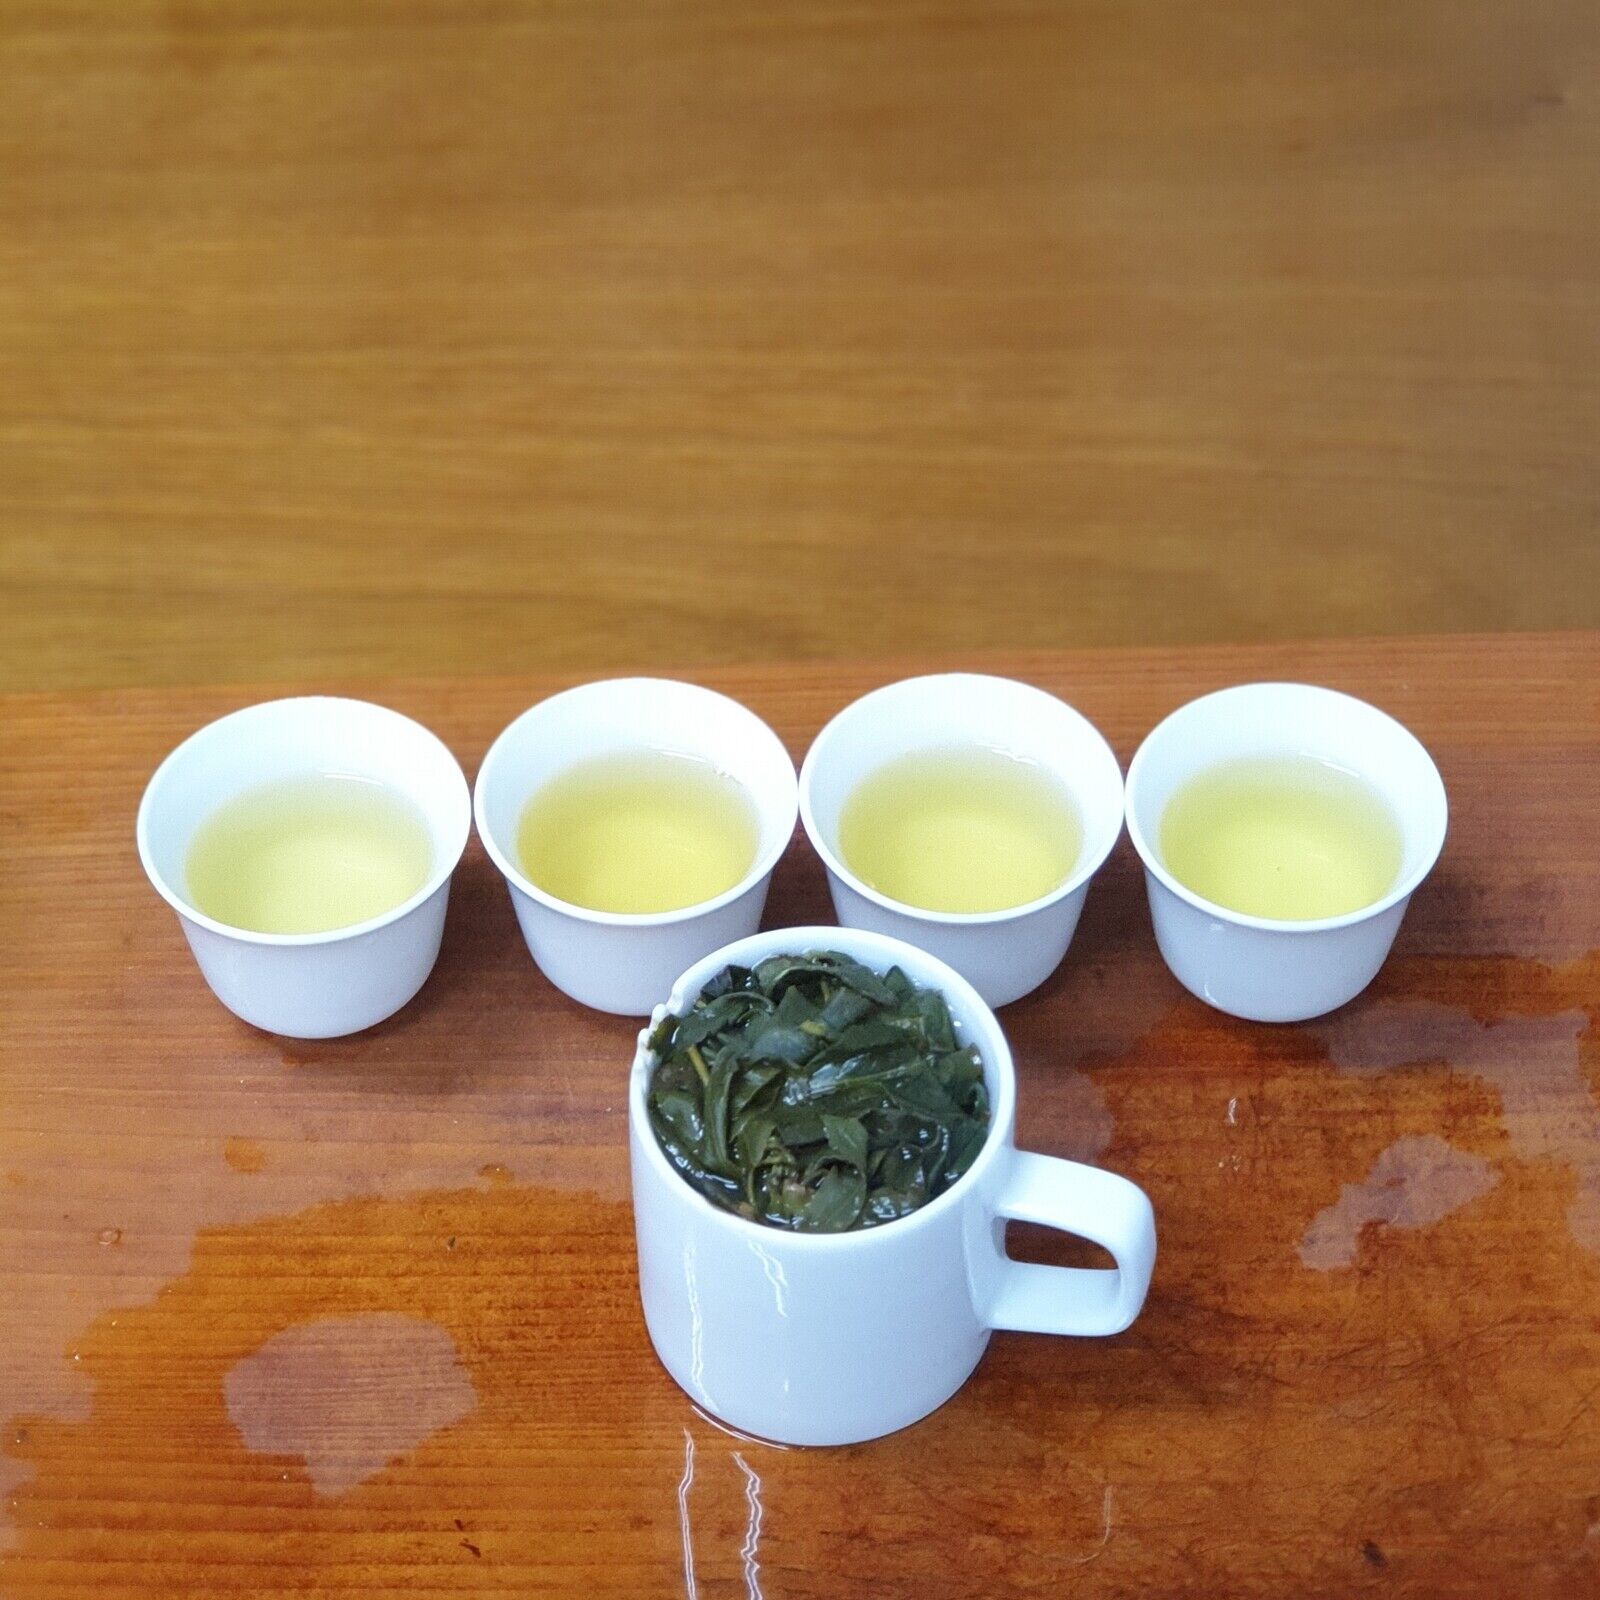 New Tea Mountain Selection Tea Oolong Tea  High Mount Oolong Tea 300g* 4